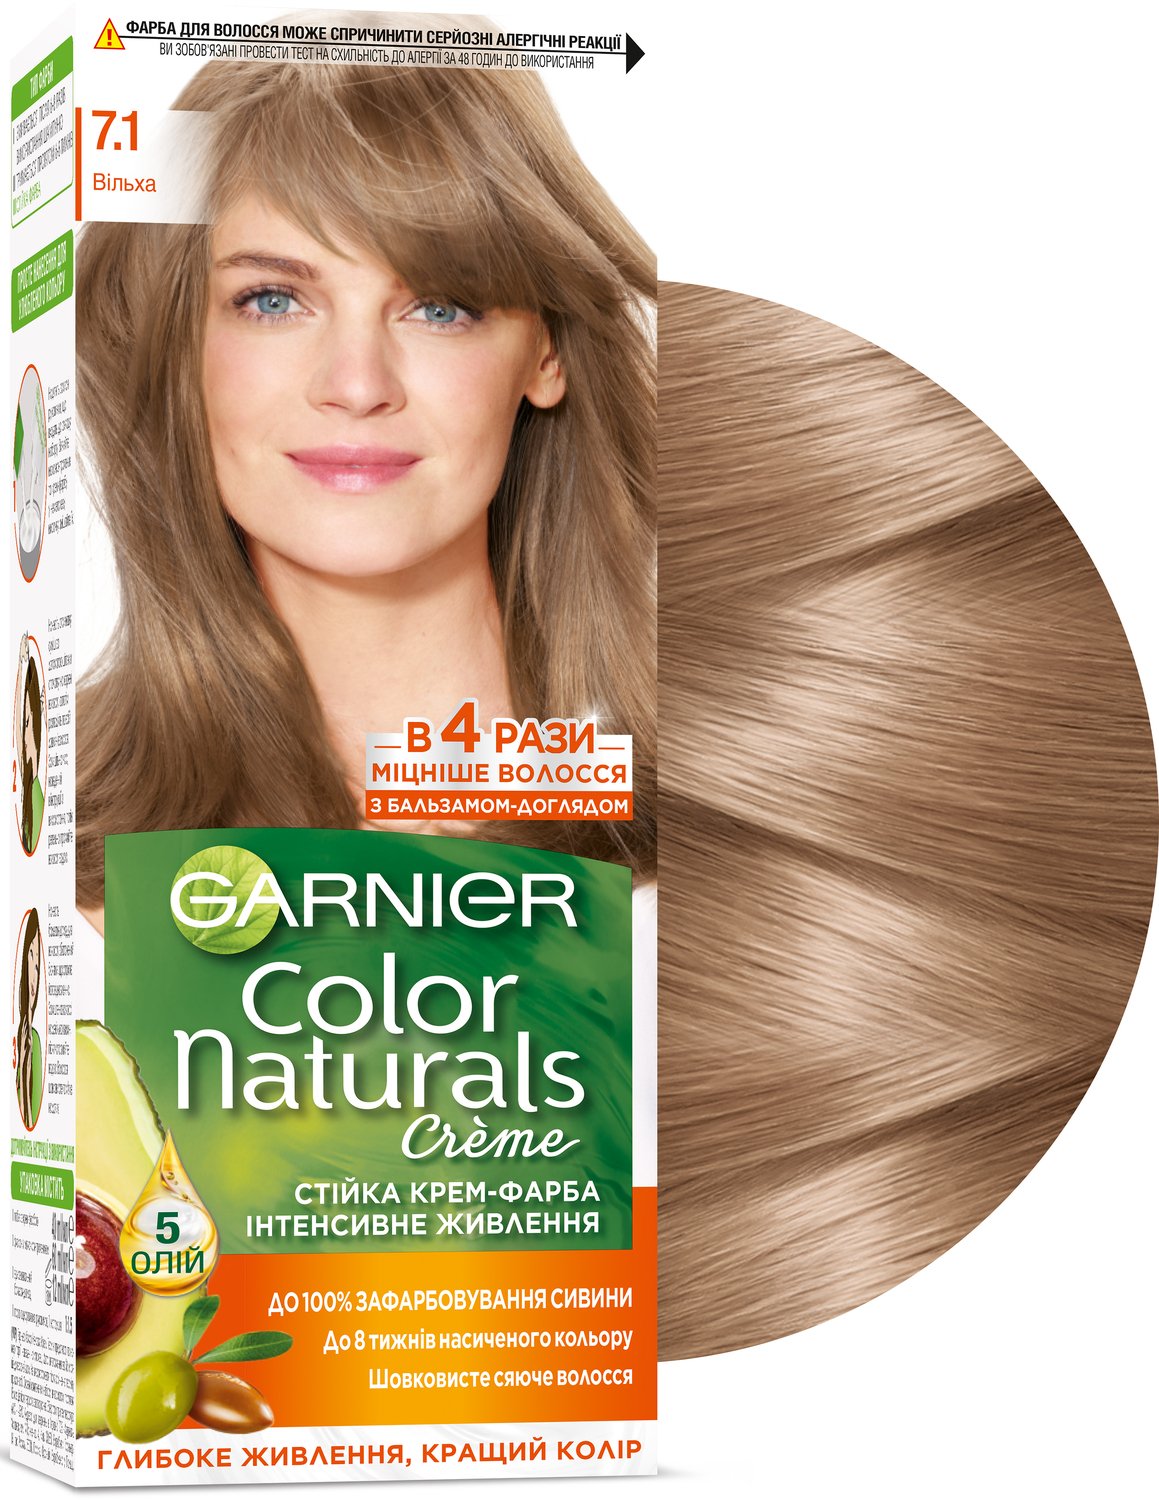 Garnier color краска для волос отзывы. Гарнер колор ,7.1. Гарнер краска 7.1. Краска гарньер колор 7.1. Краска Garnier Color naturals 7.1 ольха.